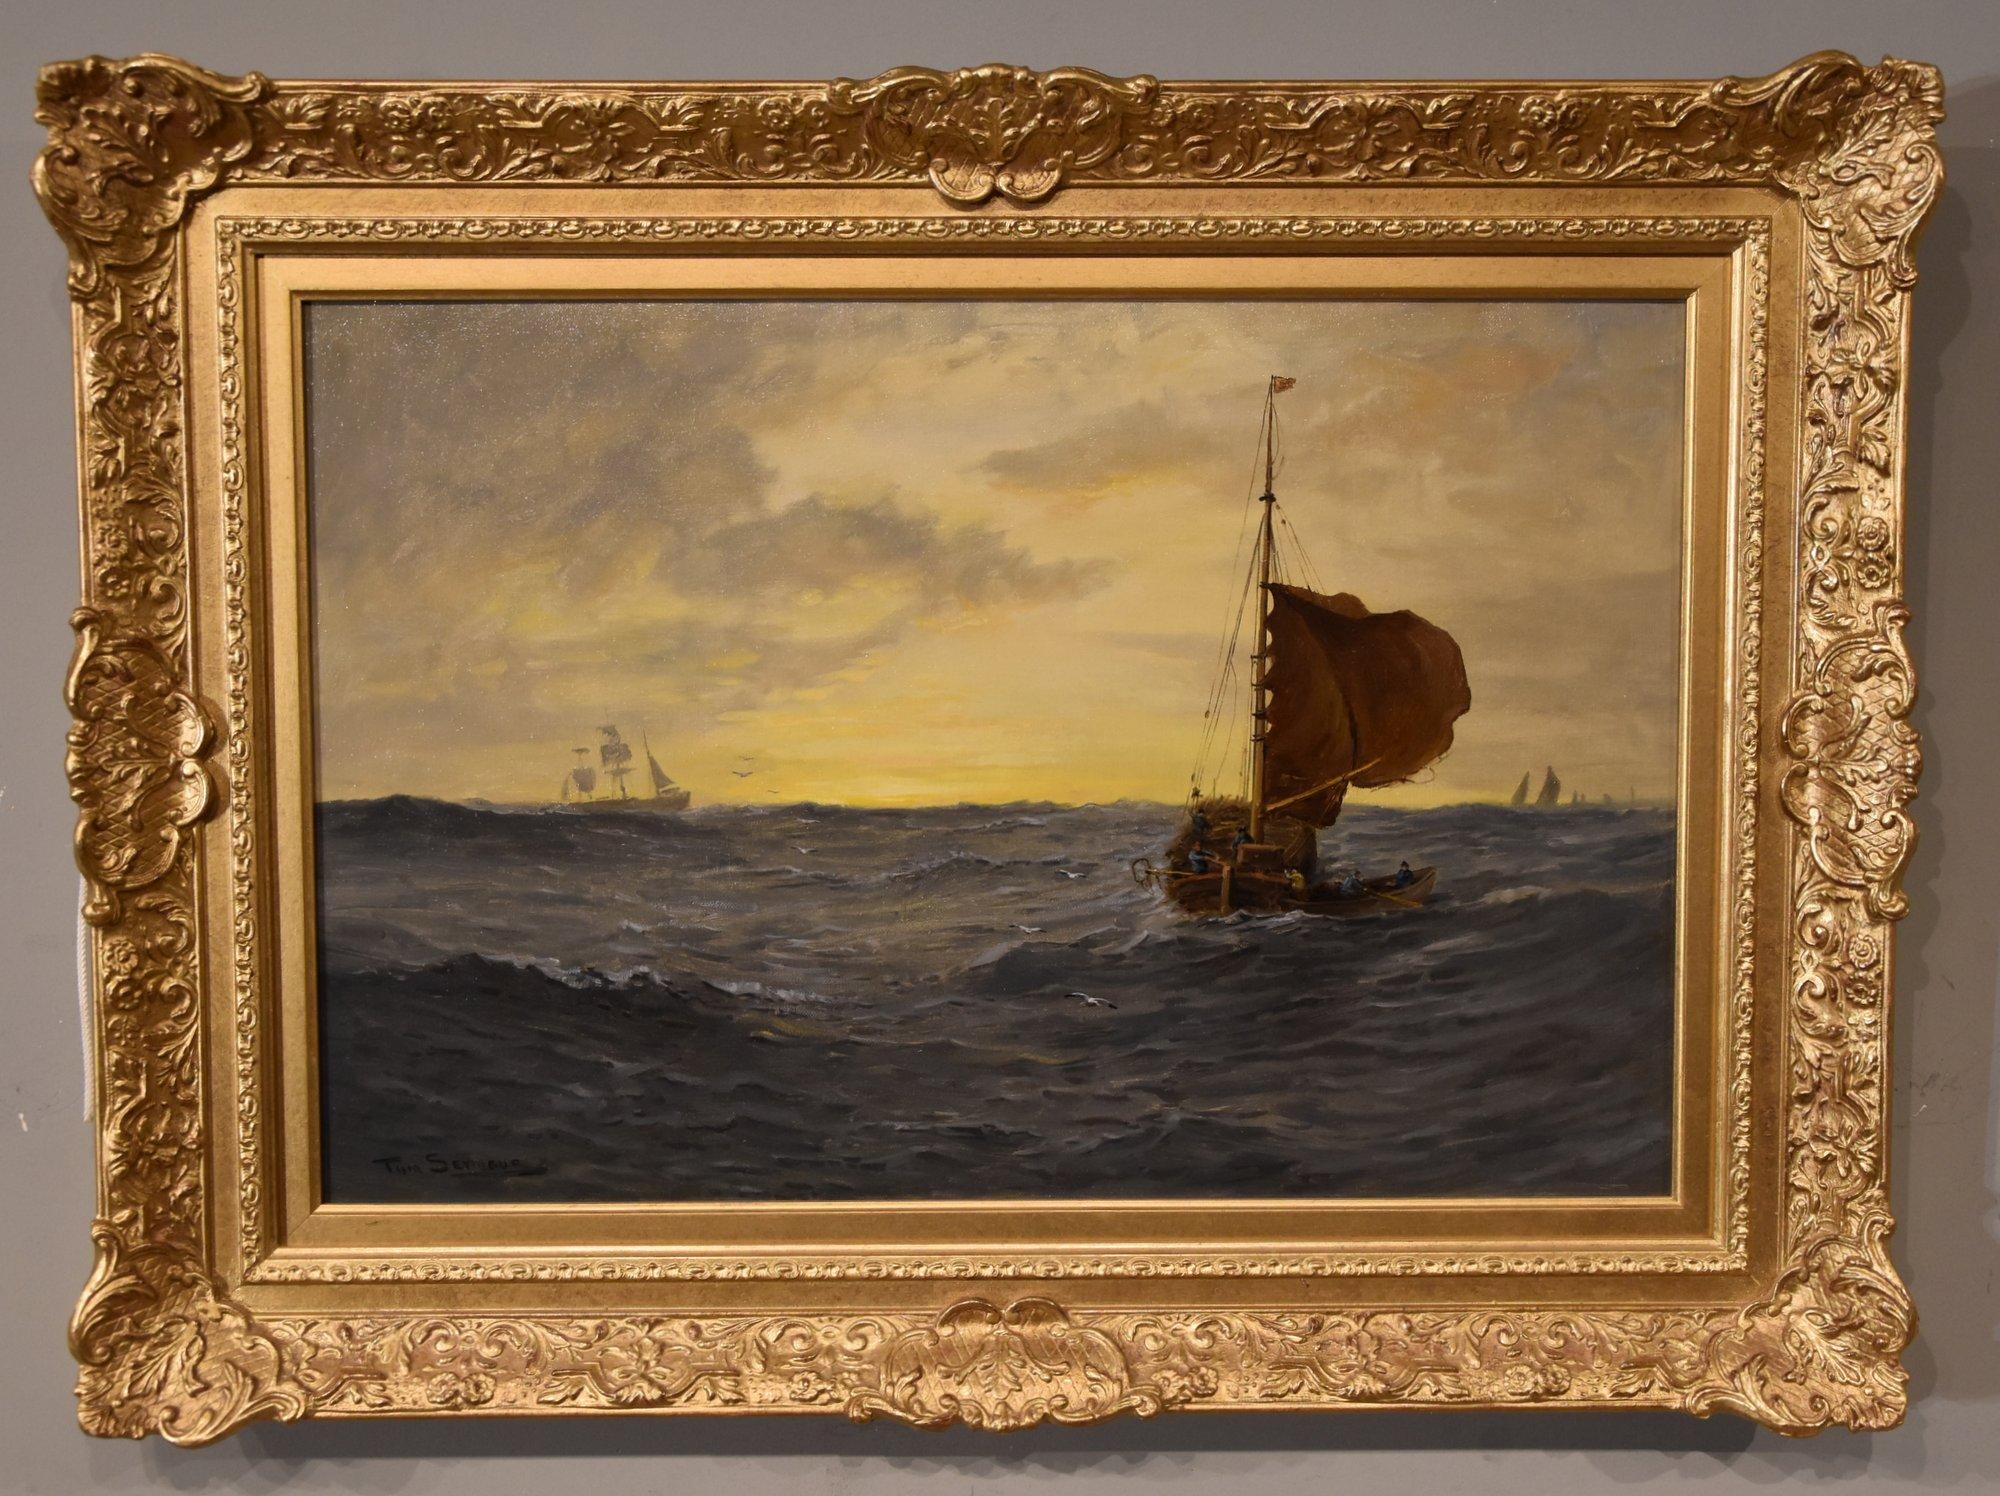 Ölgemälde von Tom Seymour "Sonnenaufgang in der Nordsee" 1844 - 1904 Maler von stimmungsvollen Landschaften und Küstenlandschaften, insbesondere zu Zeiten des Wechsels von Tag und Nacht. Öl auf Leinwand. Signierter Titel verso

Maße ungerahmt 16 x